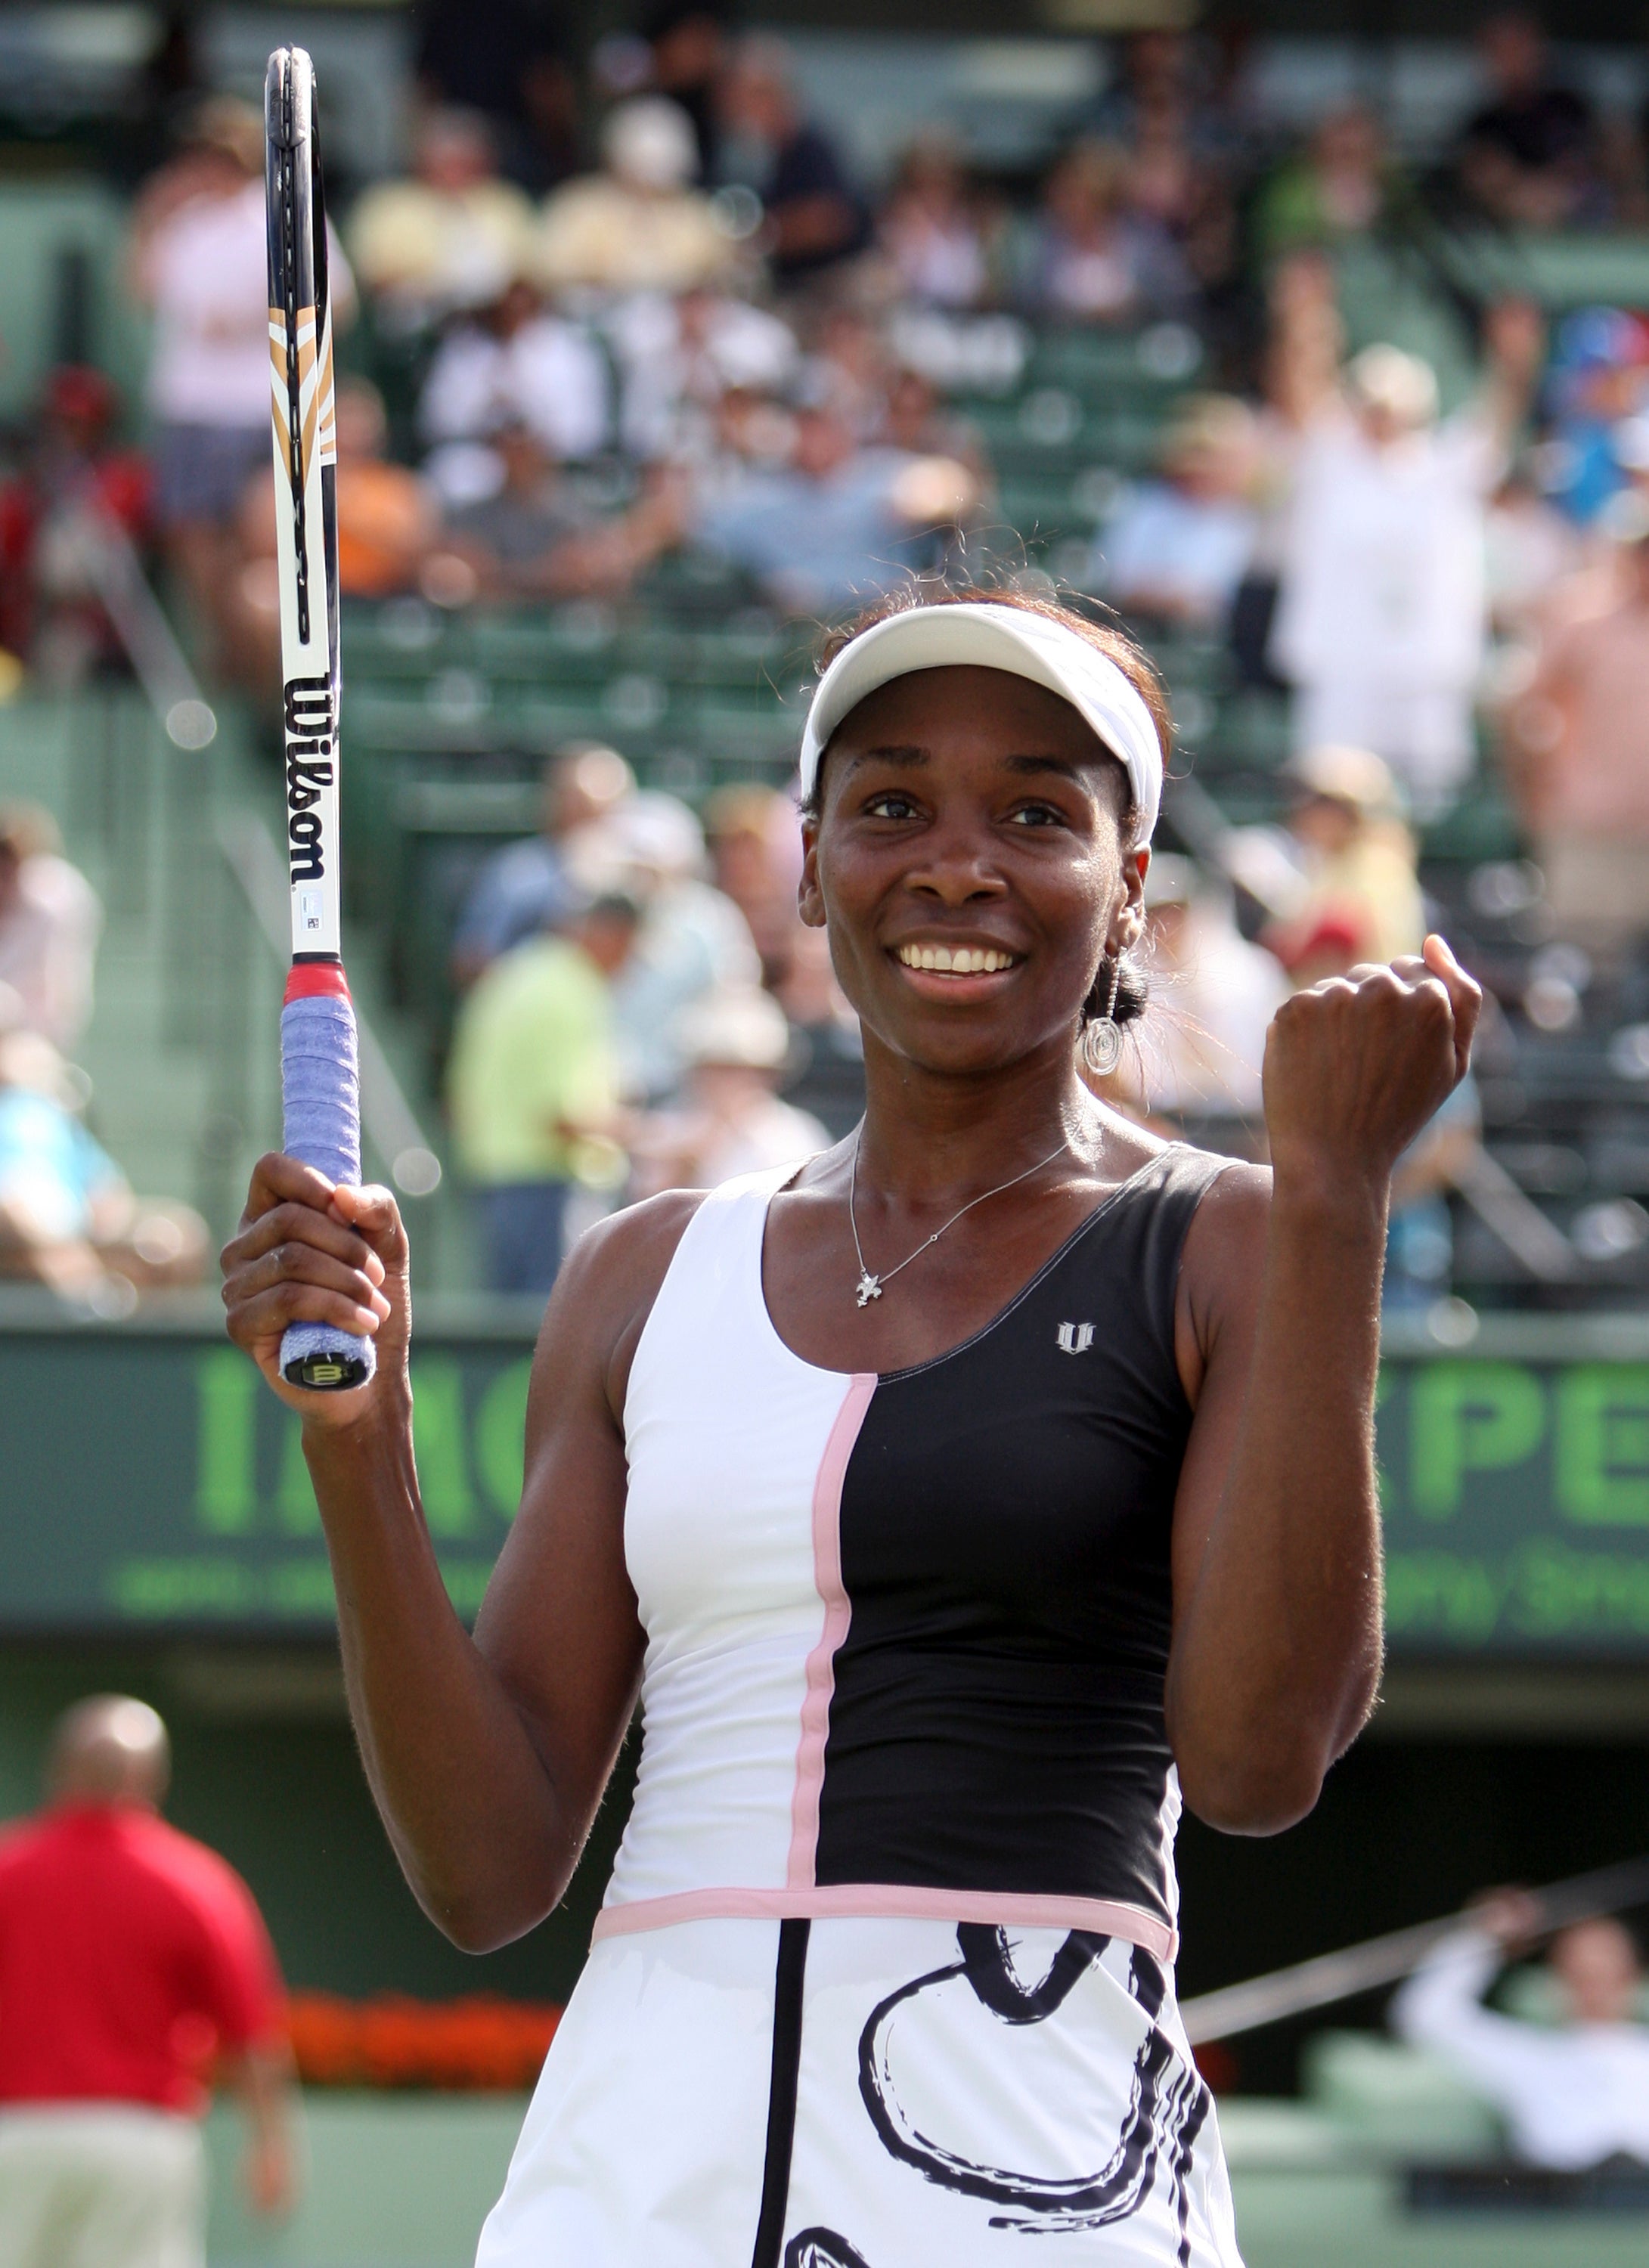 Venus Williams Returns to Tennis After Illness